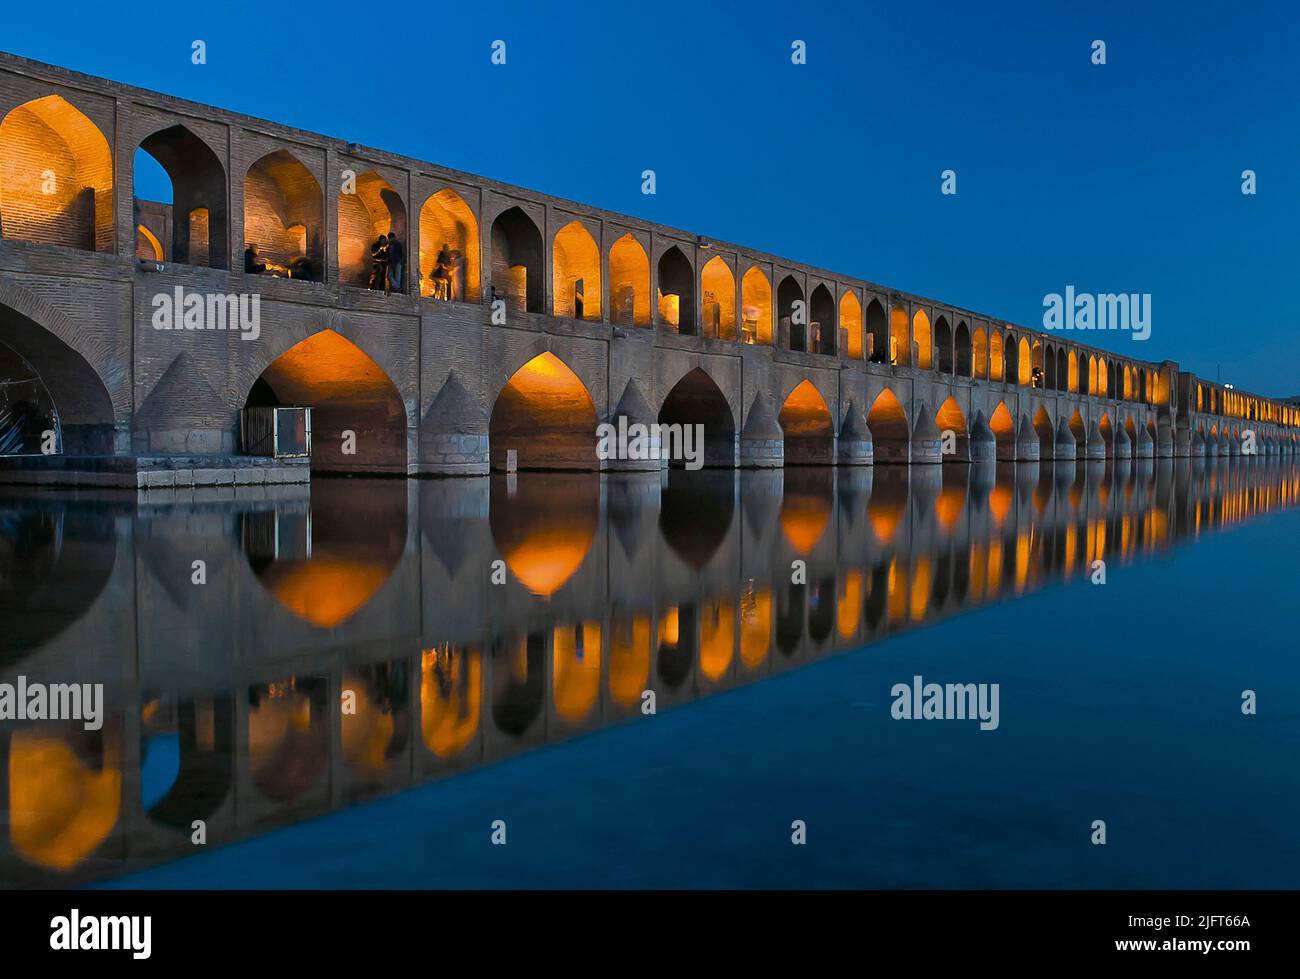 Le pont Allahverdi Khan, également connu sous le nom de si-o-se Pol, la nuit, Isfahan, Iran Banque D'Images